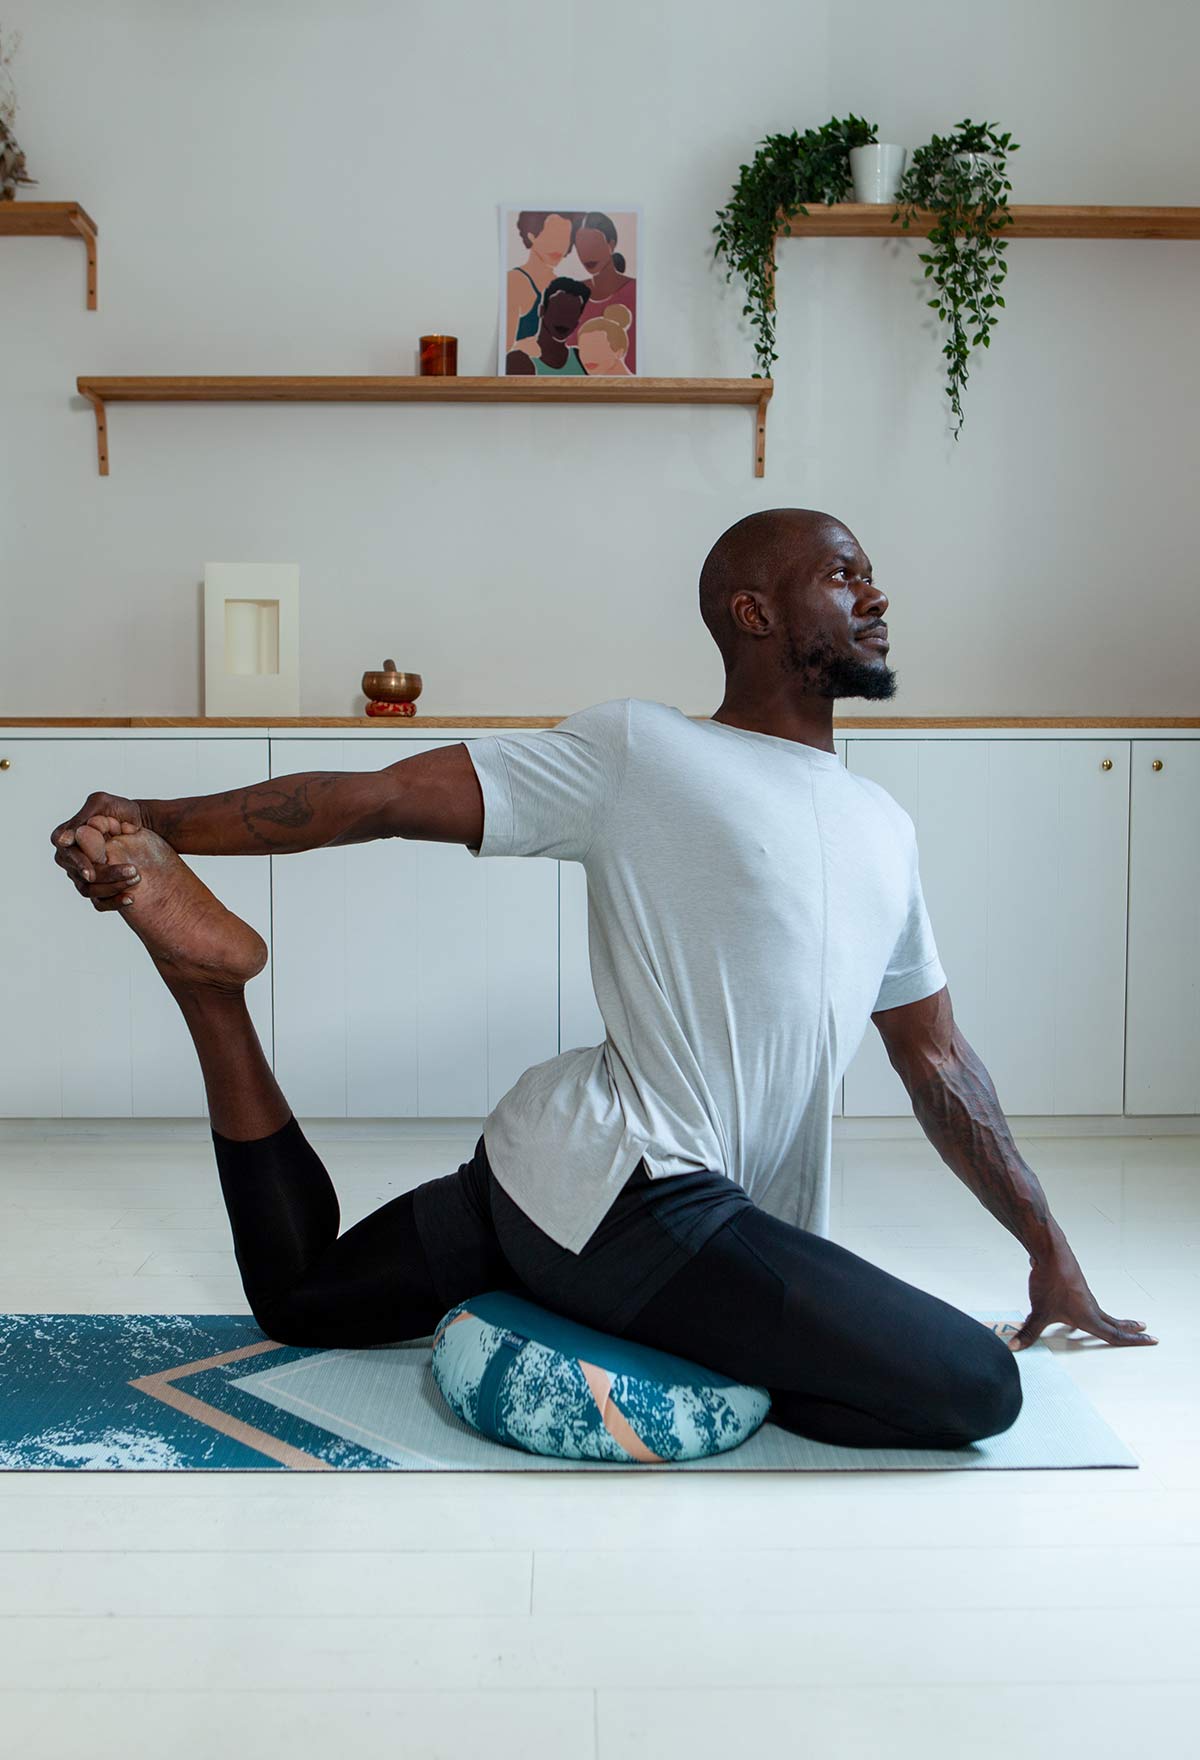 Coussin de méditation de yoga en forme de demi-lune avec